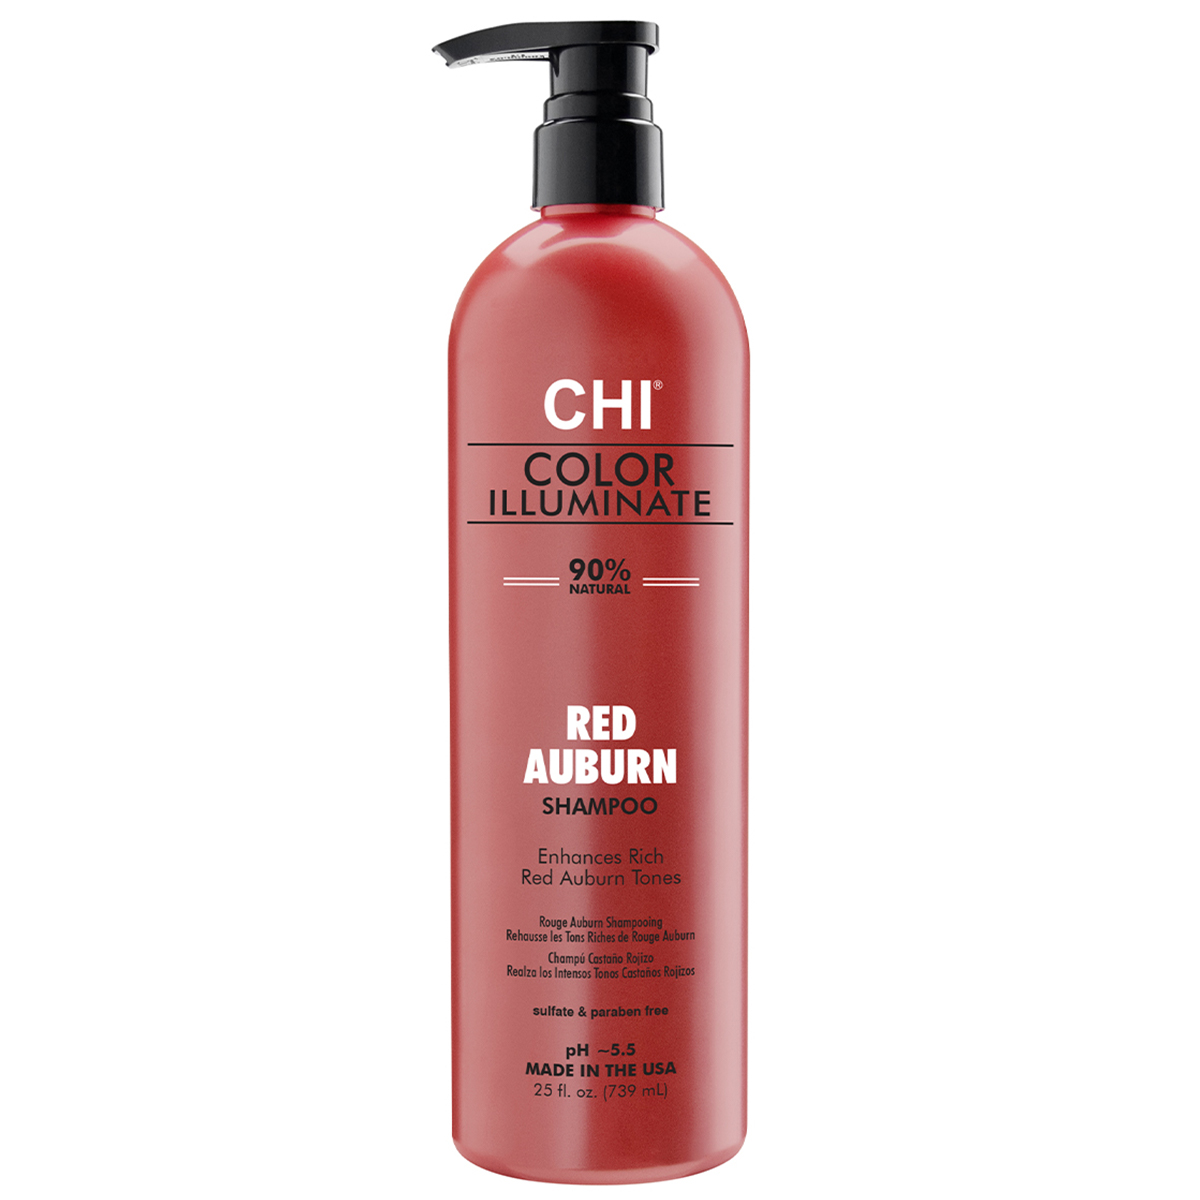 FAROUK color illuminate Spalvai paryškinantis ir spindesį suteikiantis šampūnas, raudona spalva Red Auburn